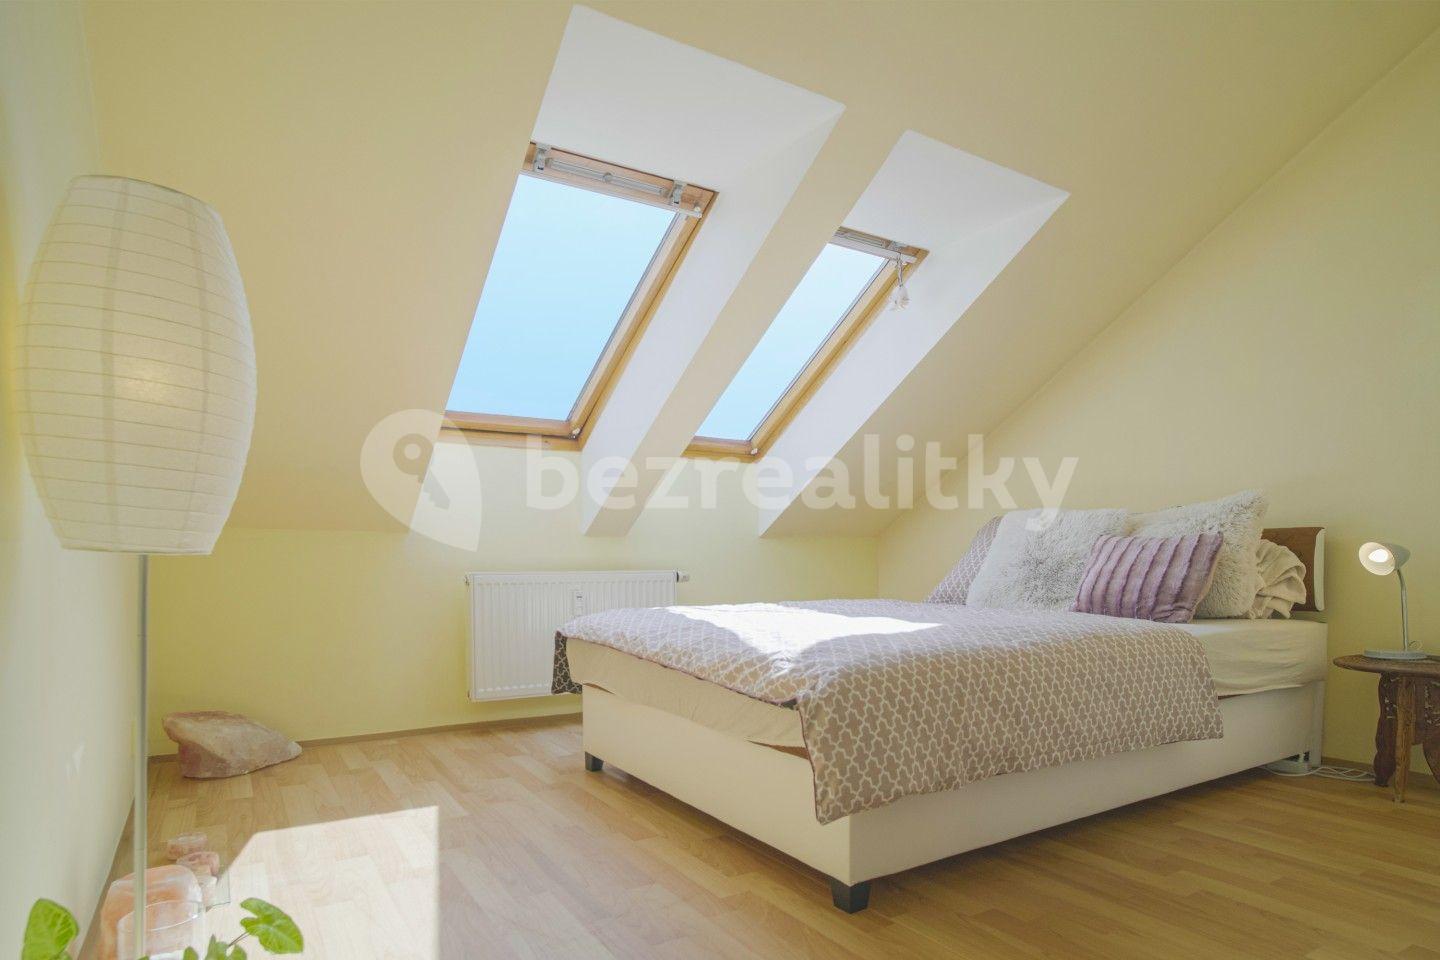 1 bedroom with open-plan kitchen flat for sale, 58 m², Franze Kafky, Mariánské Lázně, Karlovarský Region